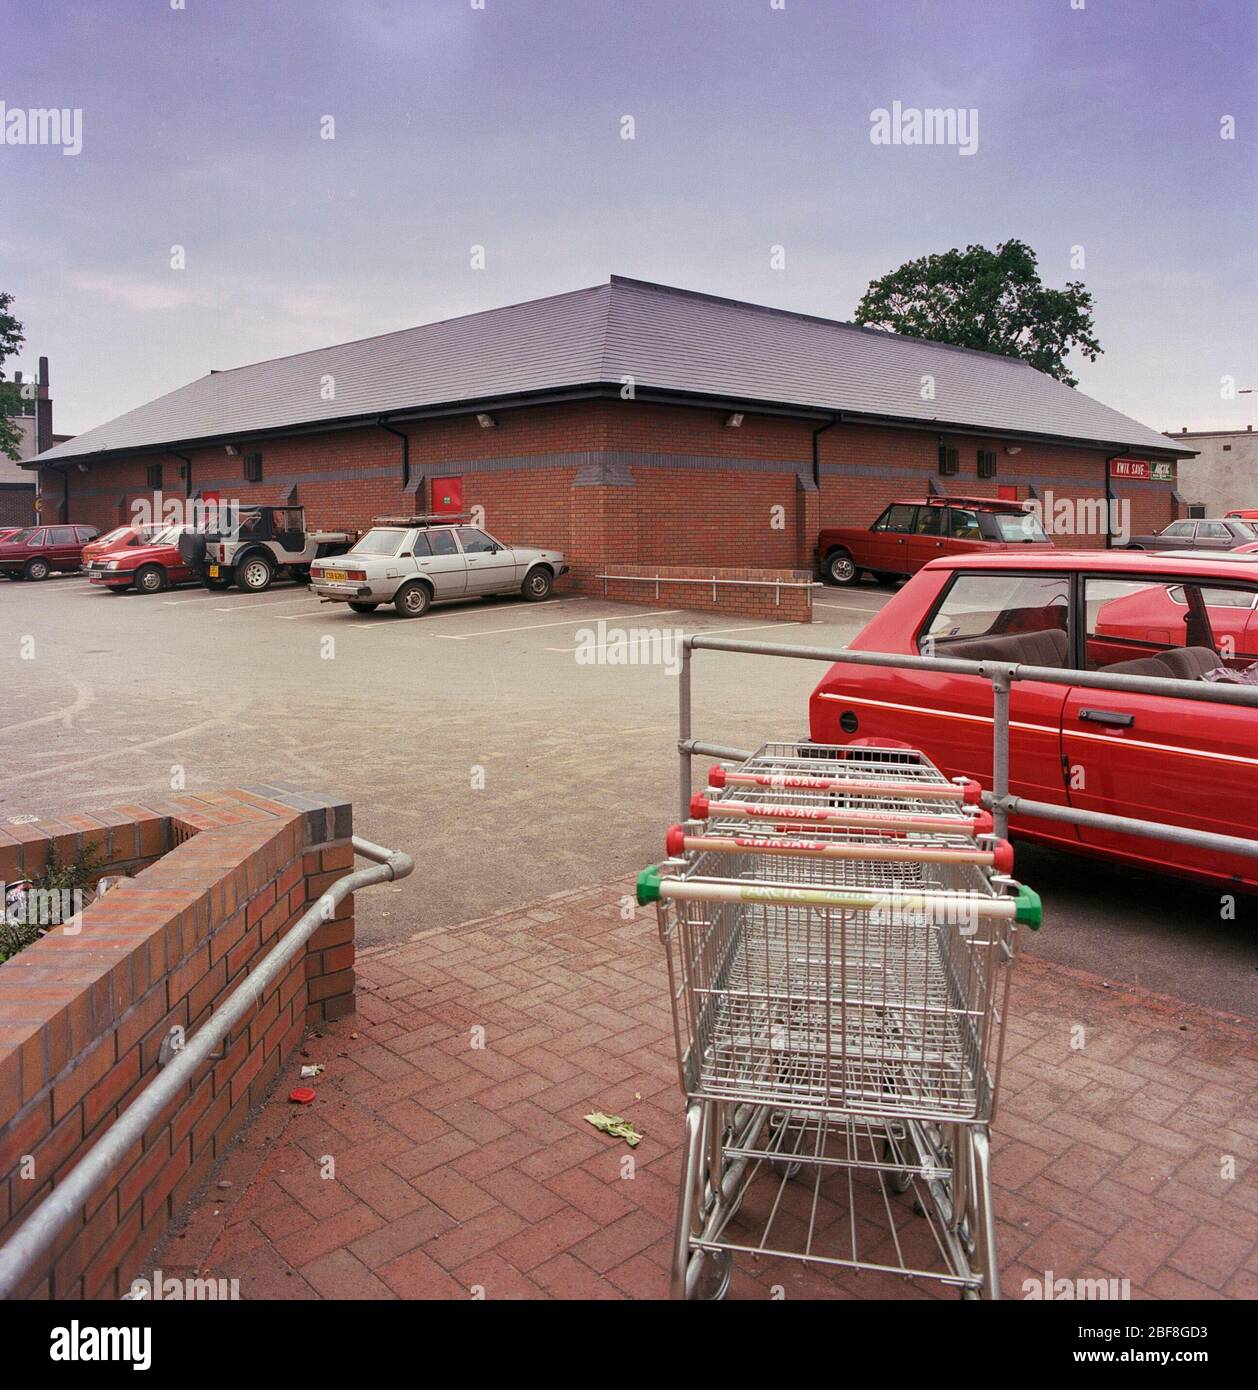 1987 Kwik Save supermarket, Rugeley, Staffordshire, England, UK Stock Photo